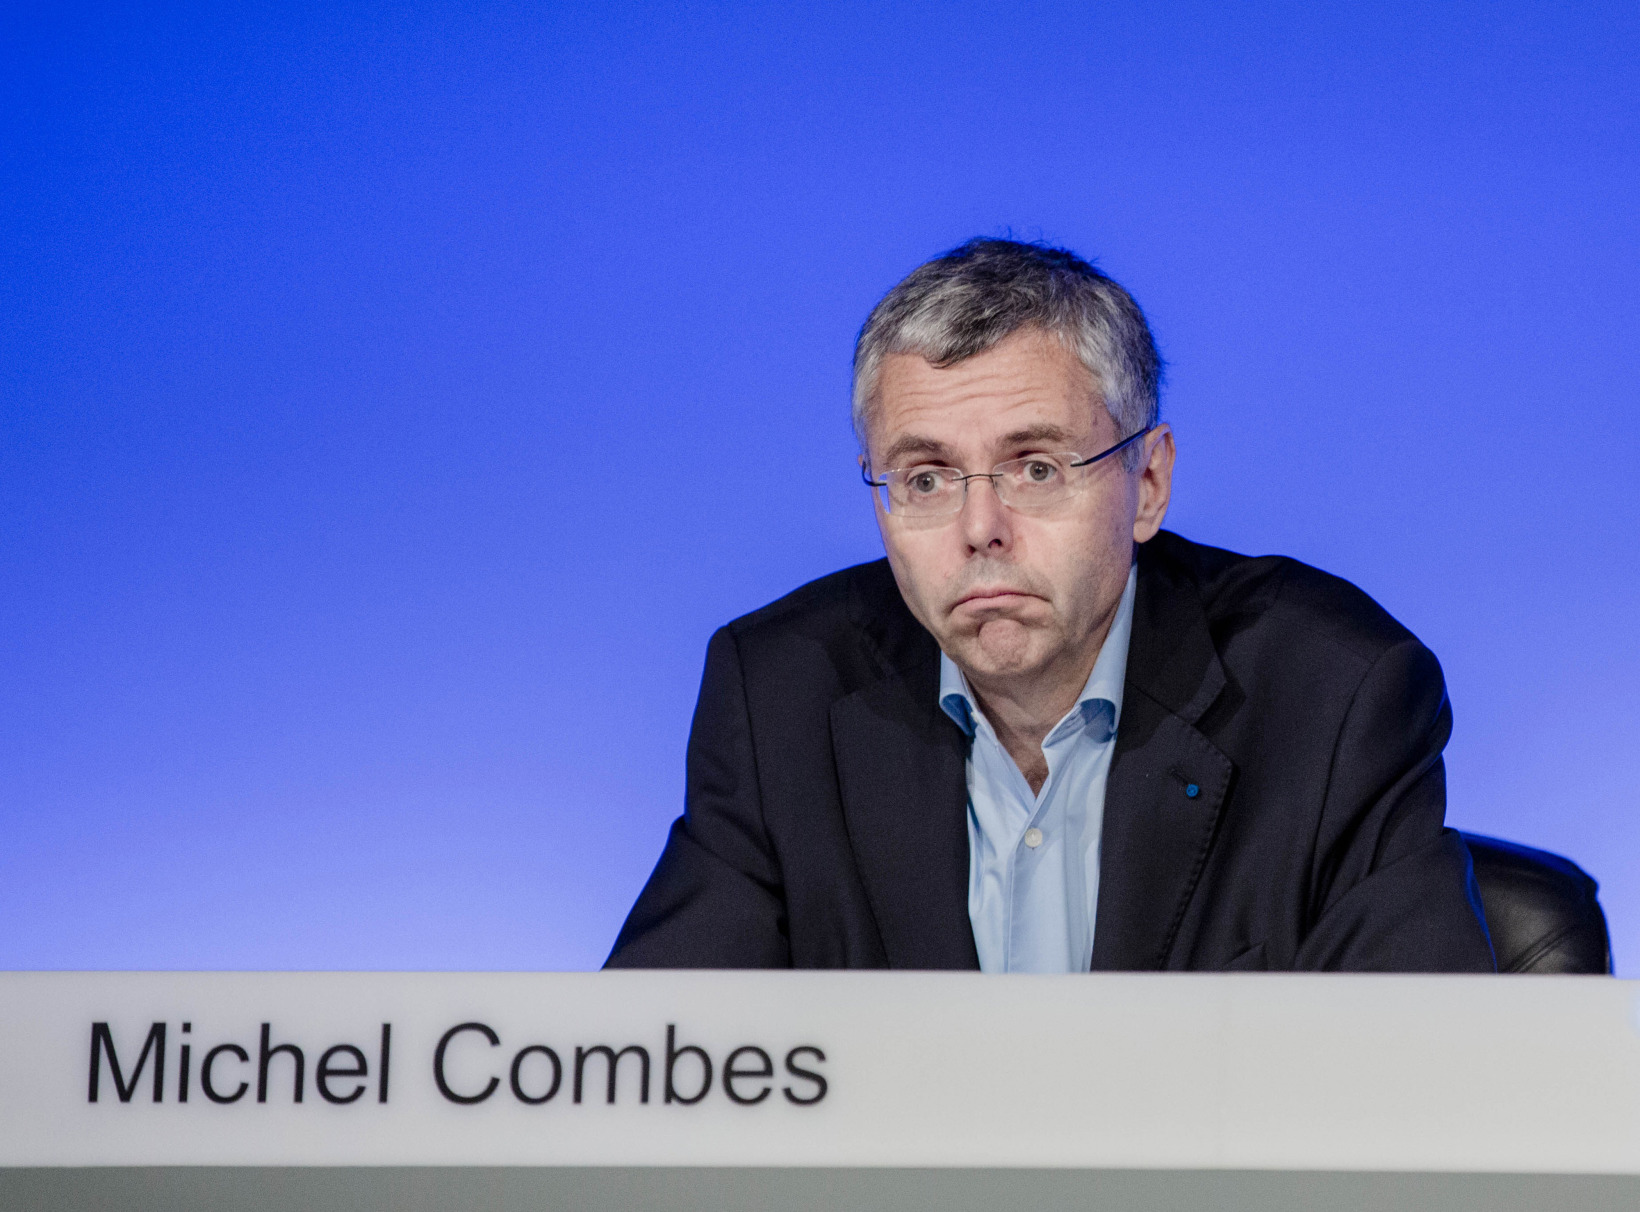 Michel Combes